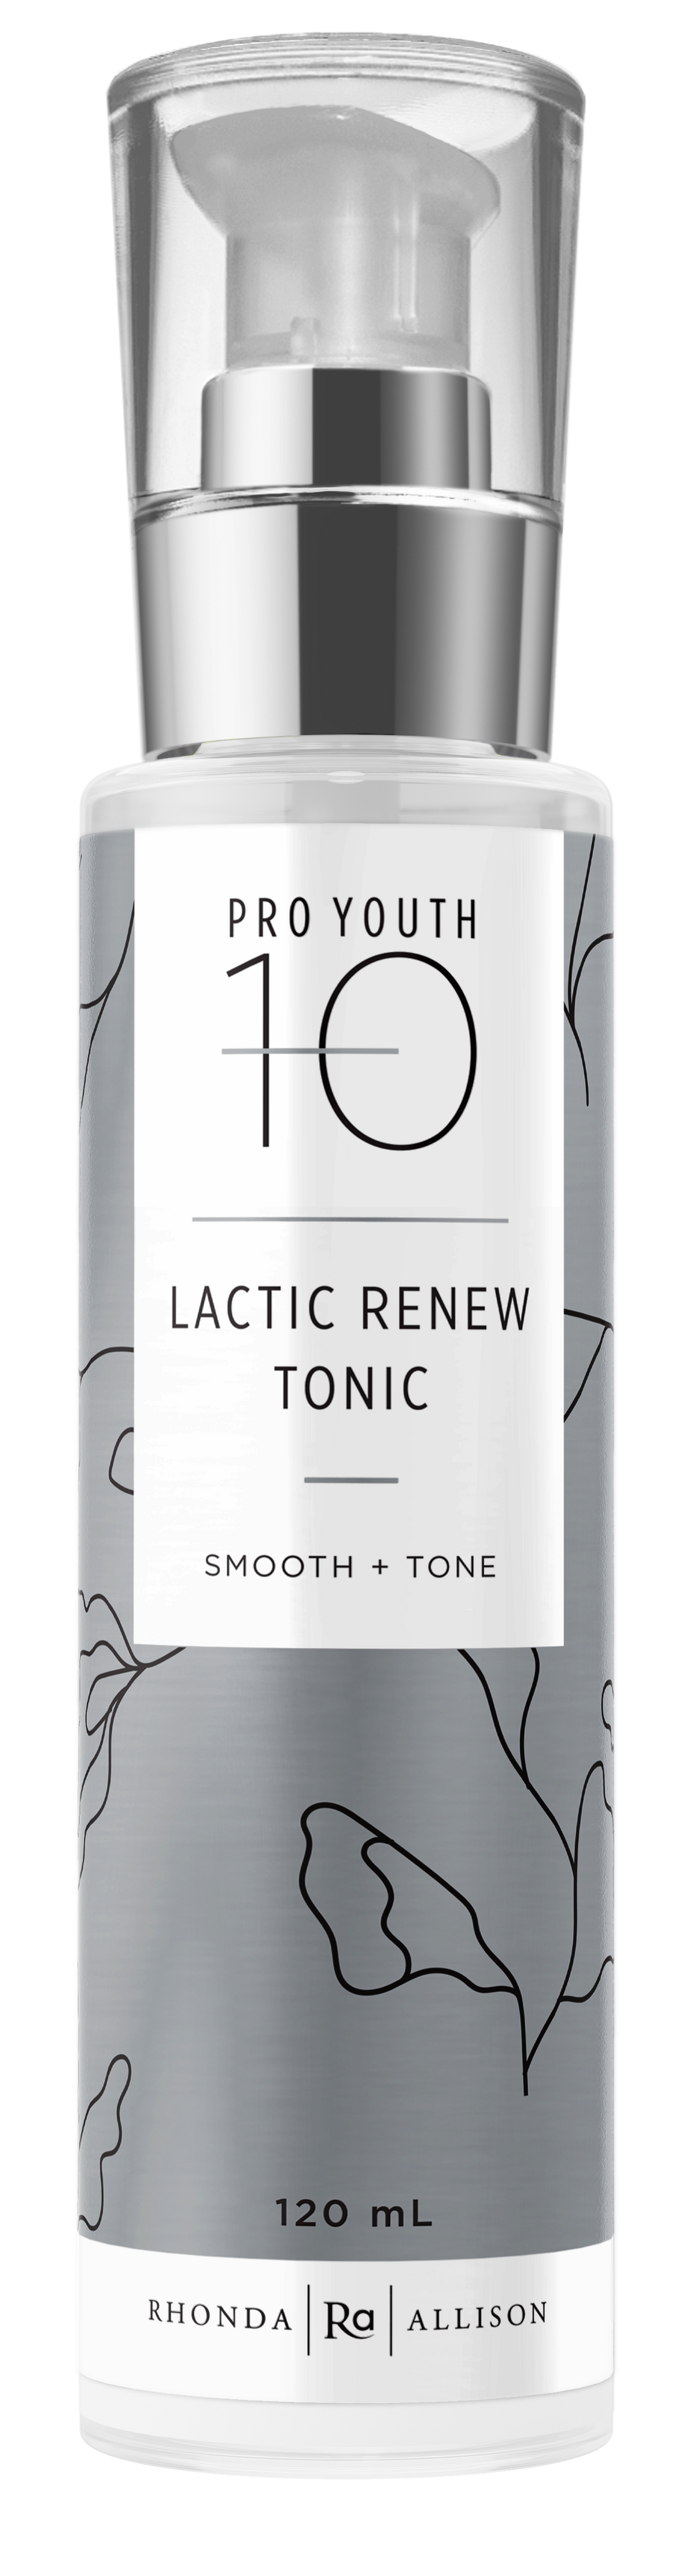 Lactic Renew Tonic